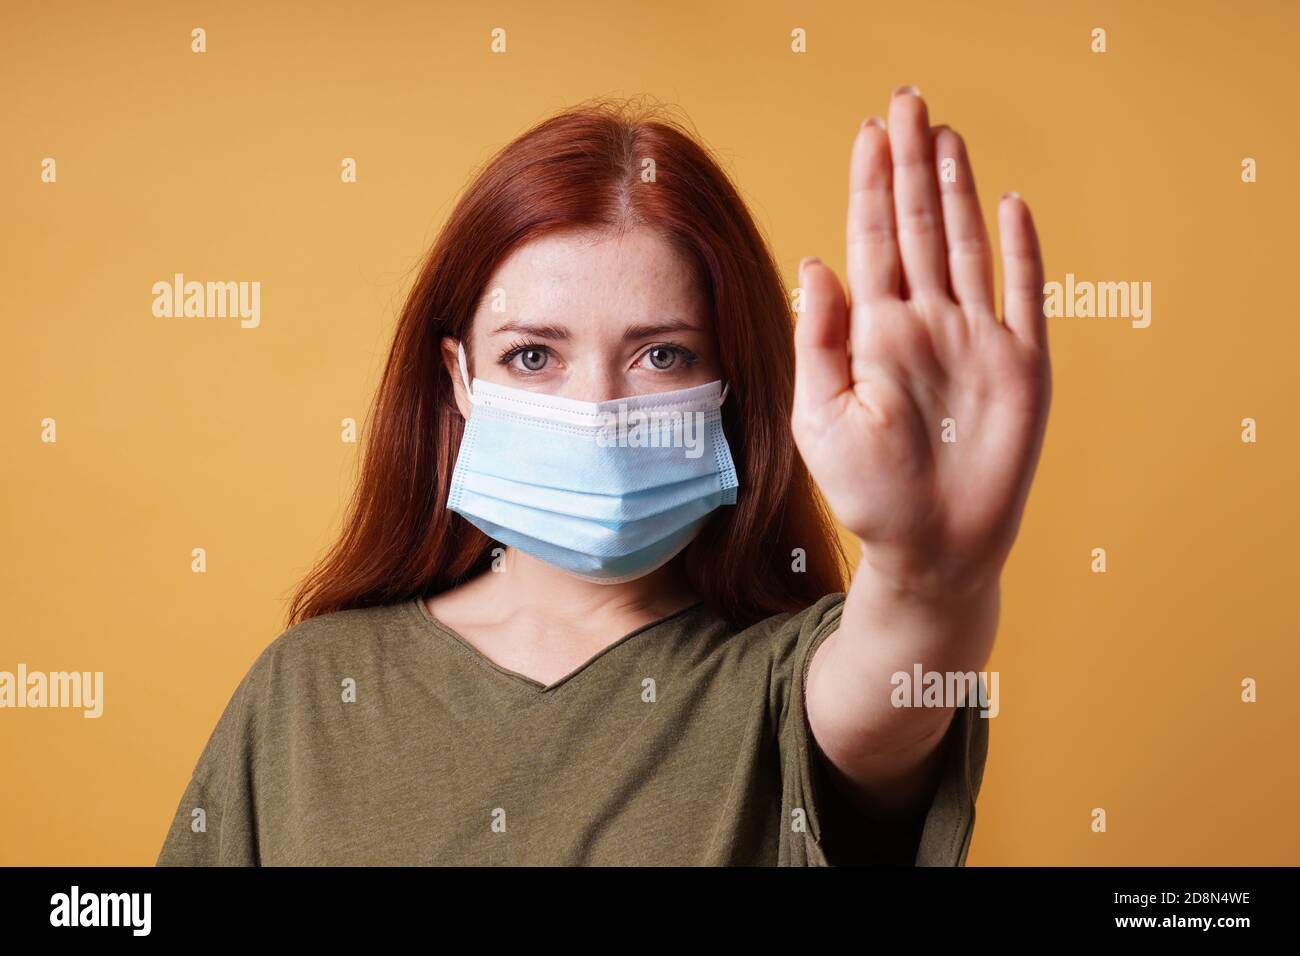 giovane donna che indossa maschera medica faccia facendo gesto di arresto con la sua mano - nessun ingresso senza maschera durante corona covid-19 concetto pandemico Foto Stock